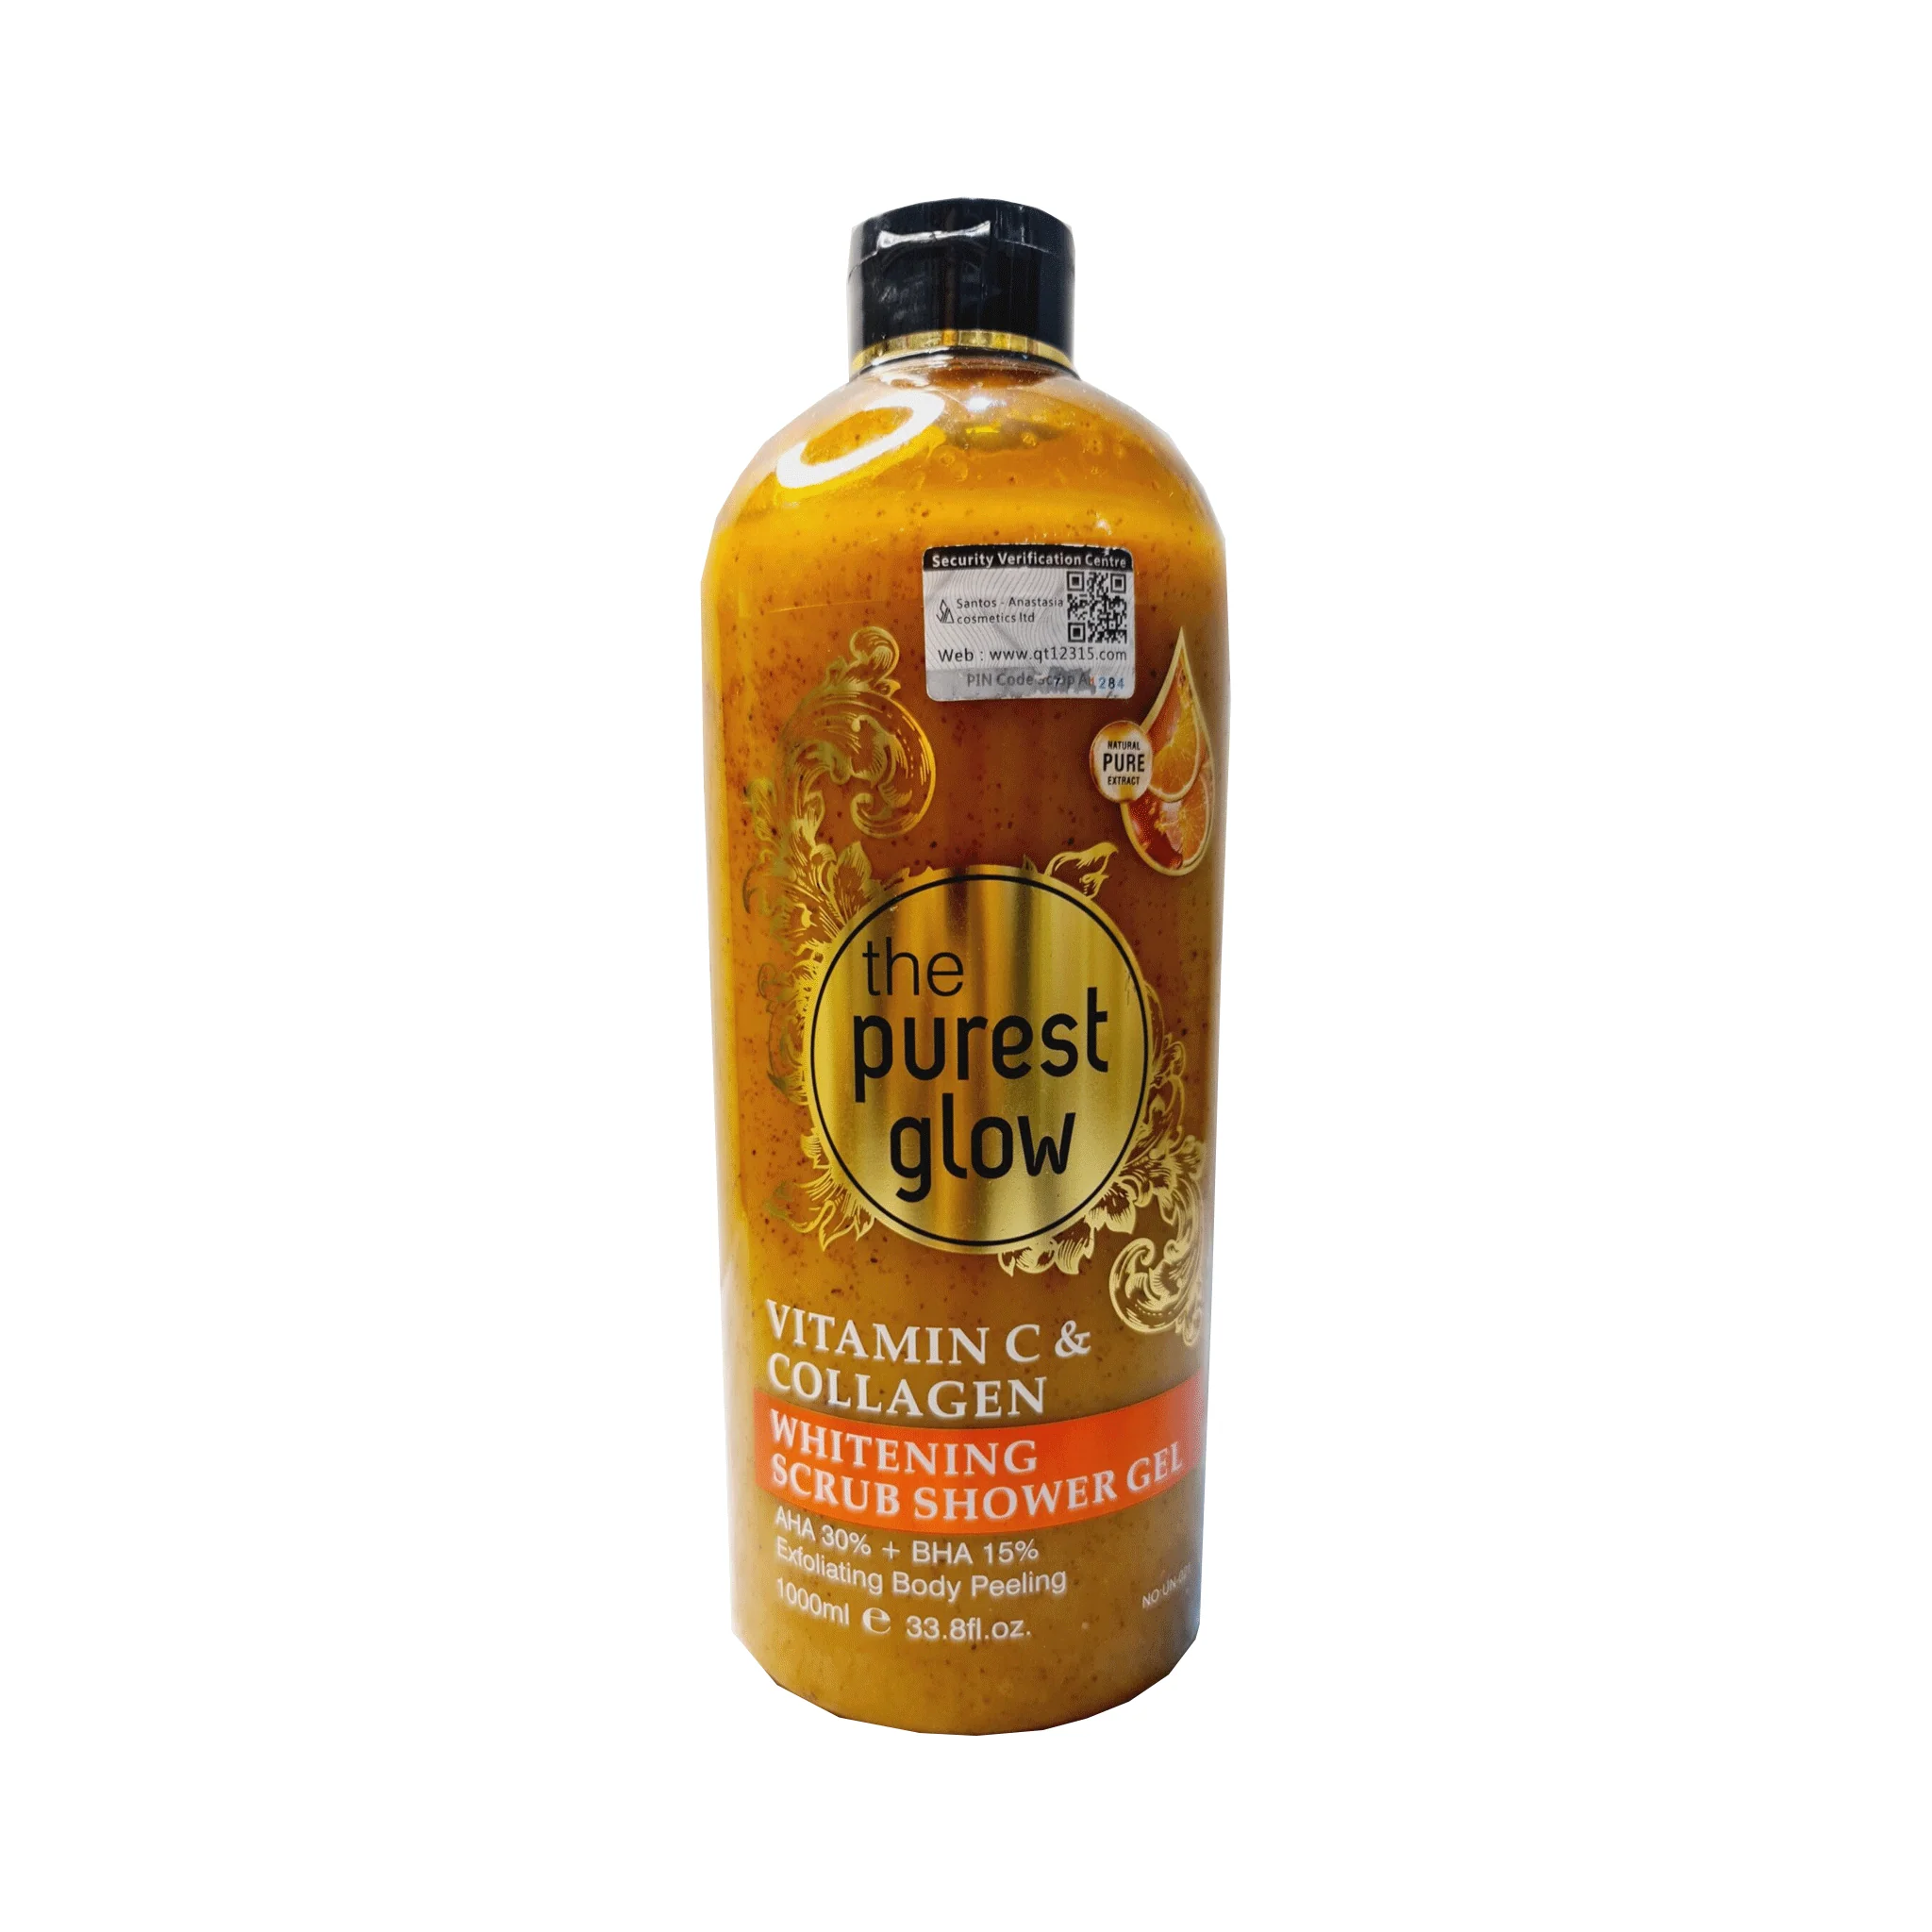 "THE PUREST GLOW" Vitamin C & Collagen Whitening Exfoliating Shower Gel